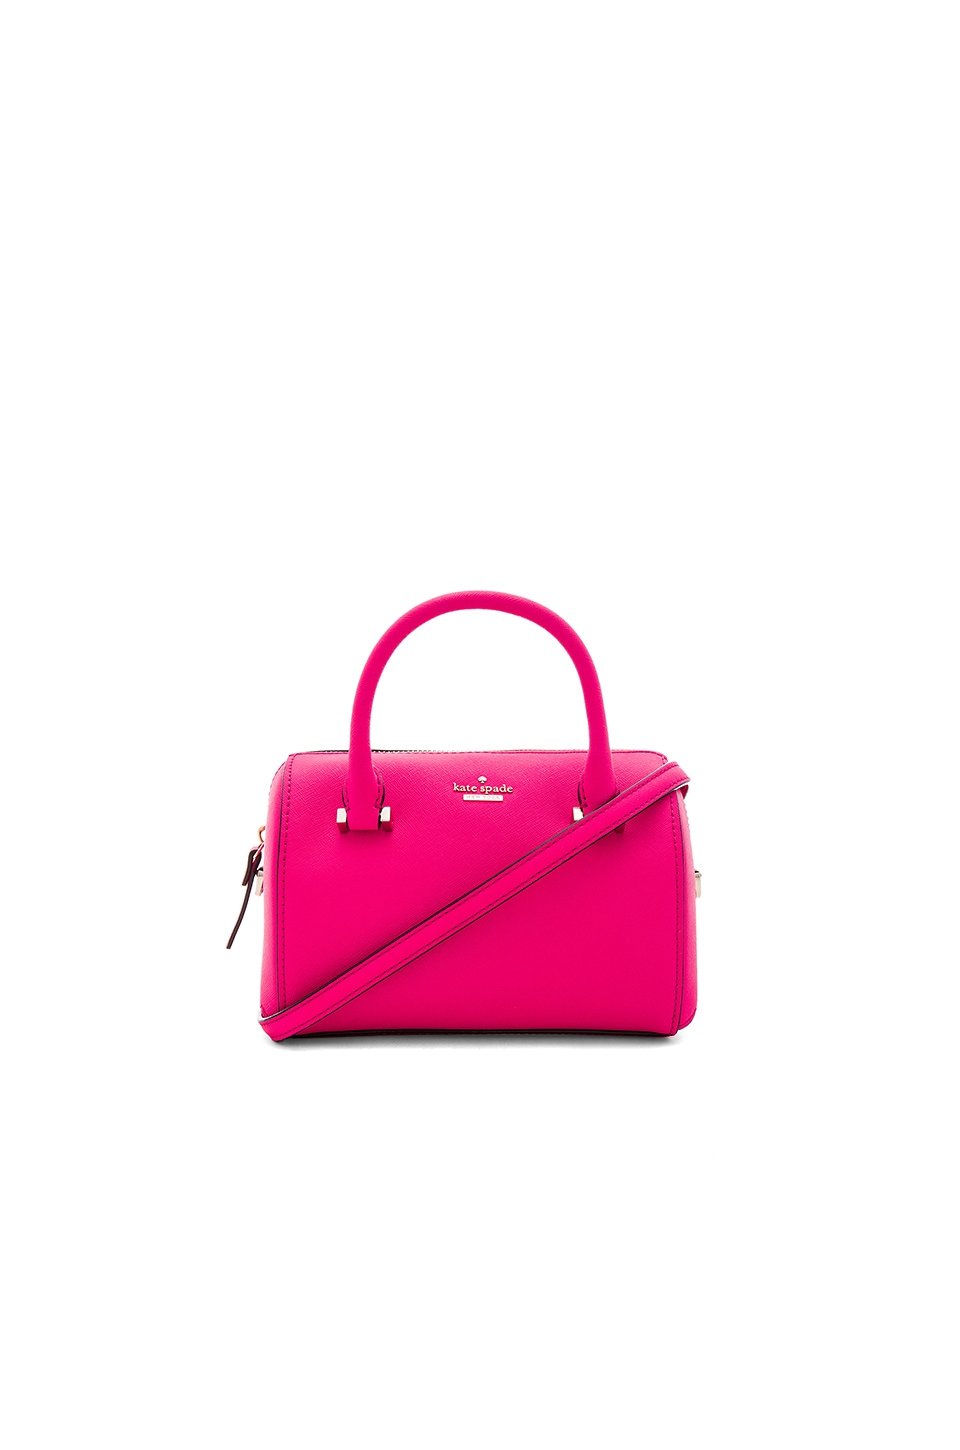 kate spade new york Lane Bag in Pink Confetti | REVOLVE